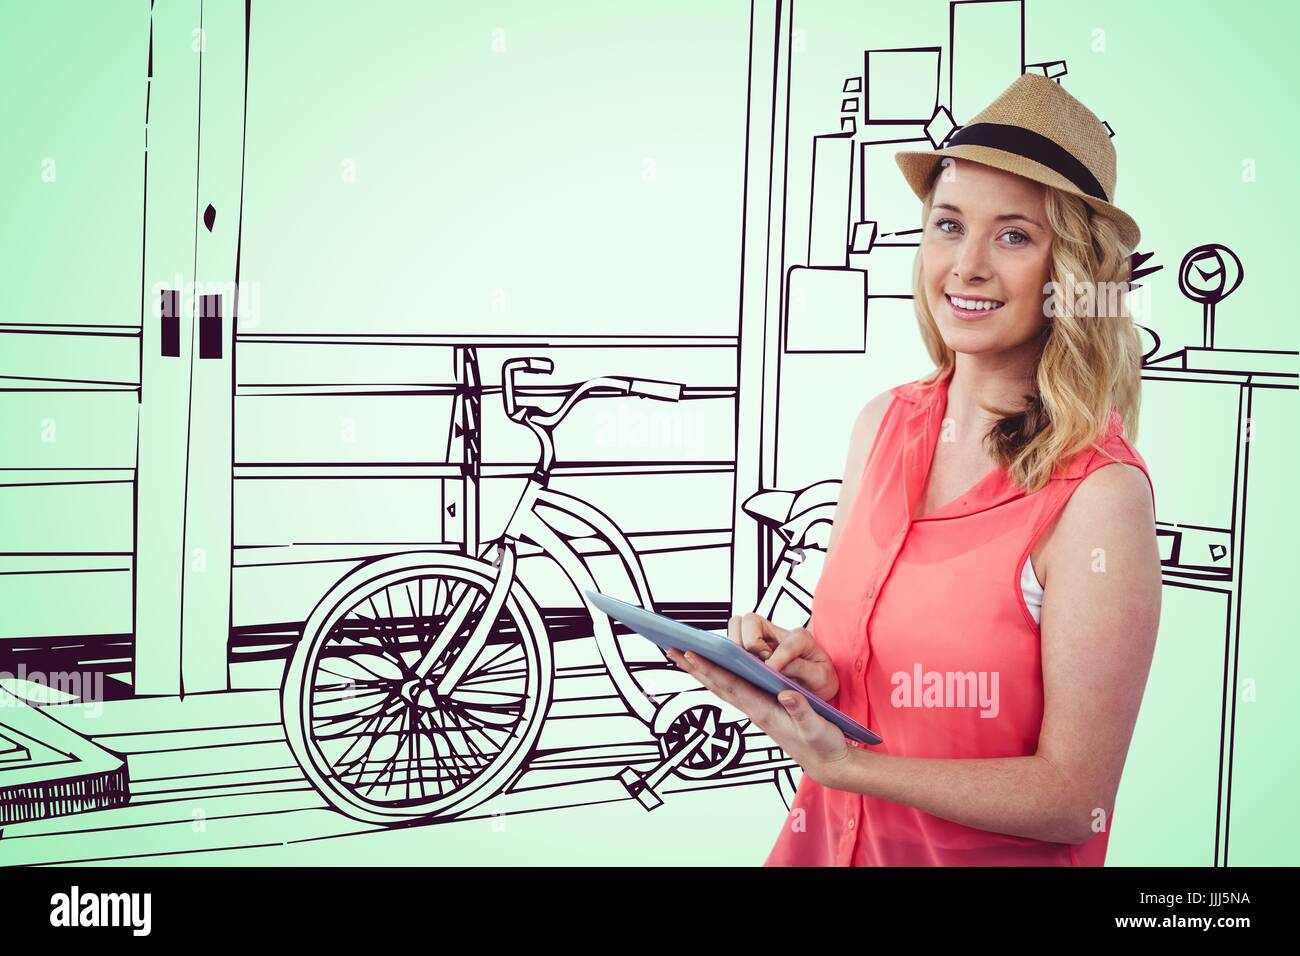 Smiling blonde woman using a digital tablet avec un dessin 3D image sur fond vert Banque D'Images